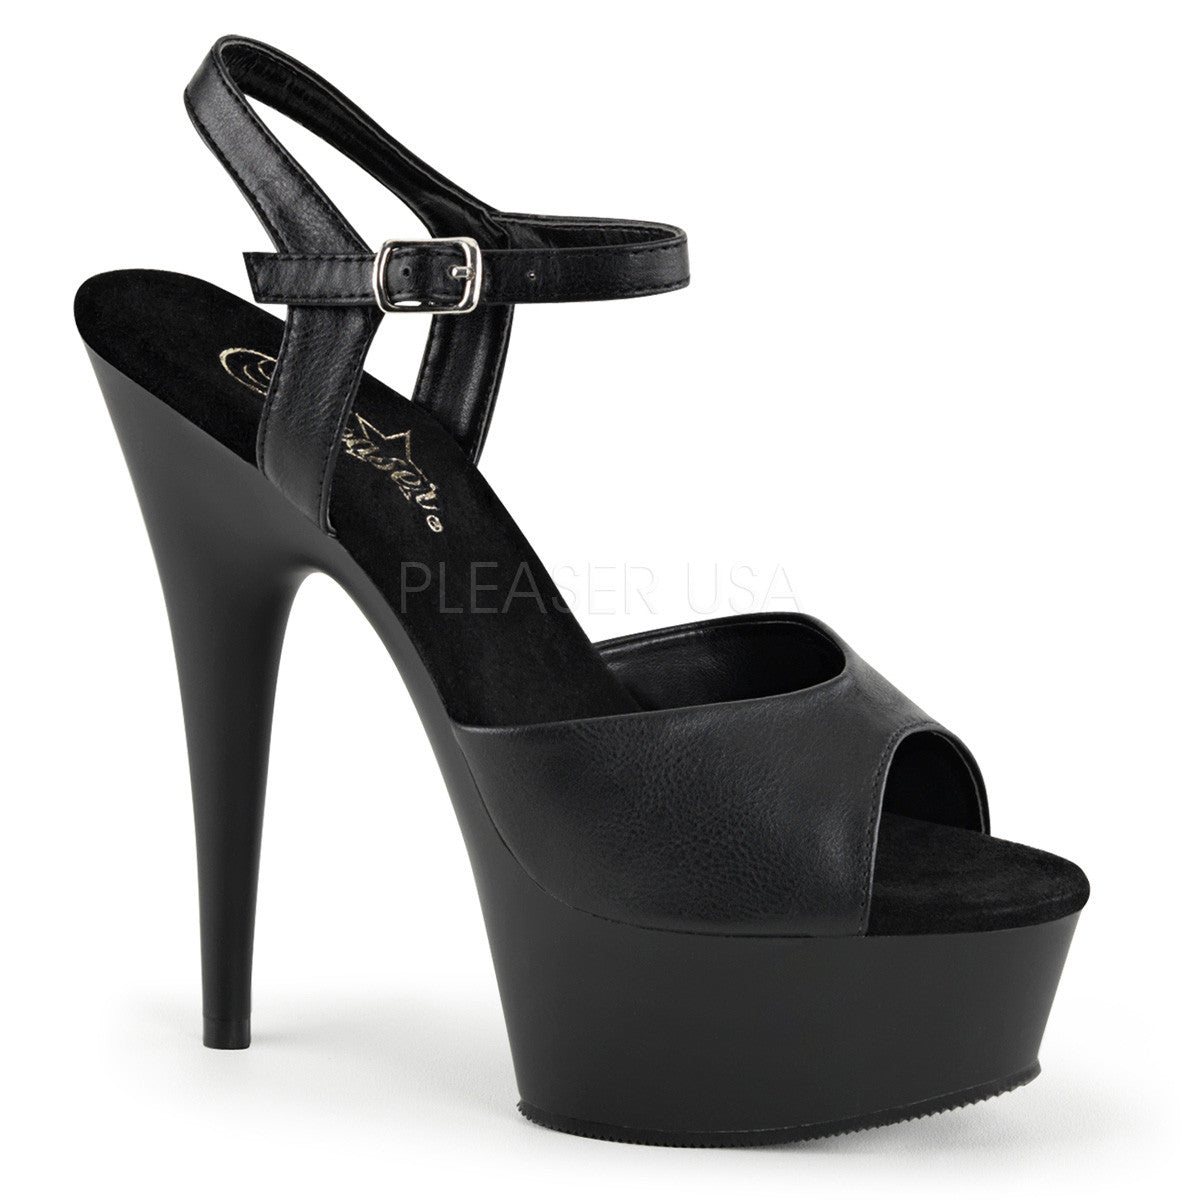 Pleaser DELIGHT-609 Black Faux Leather Ankle Strap Sandals With Black Matte Platform - Shoecup.com